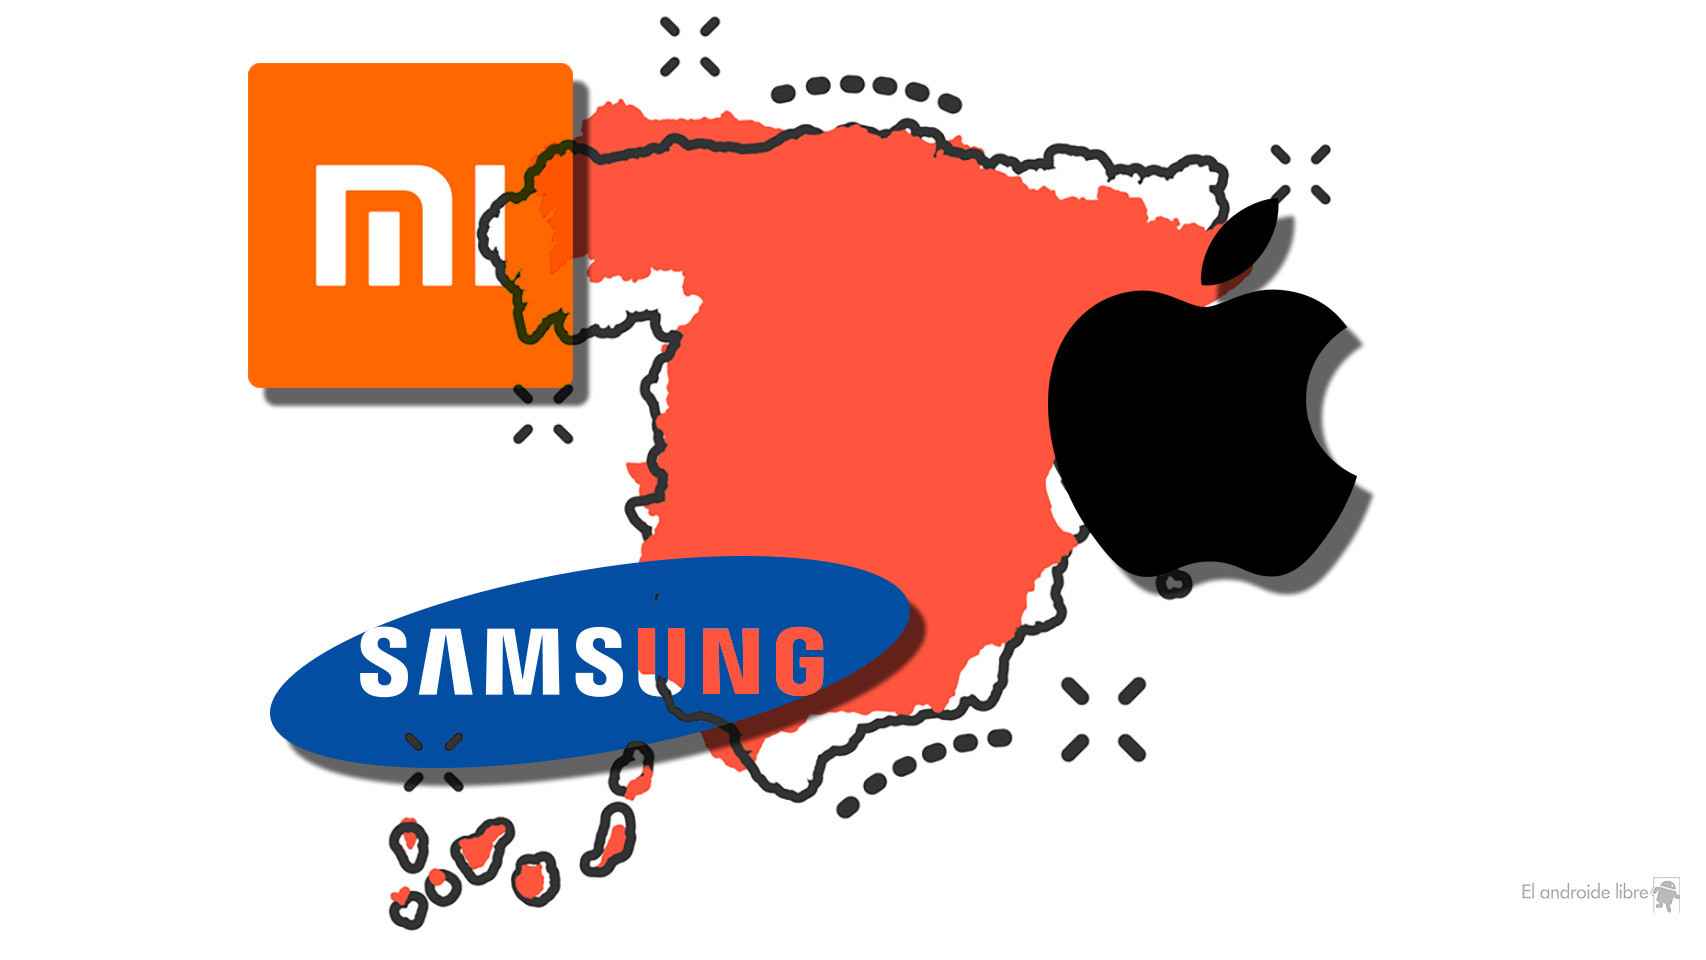 Los españoles preferimos la gama media de móviles: Xiaomi, Samsung y Apple en un combate sin fin